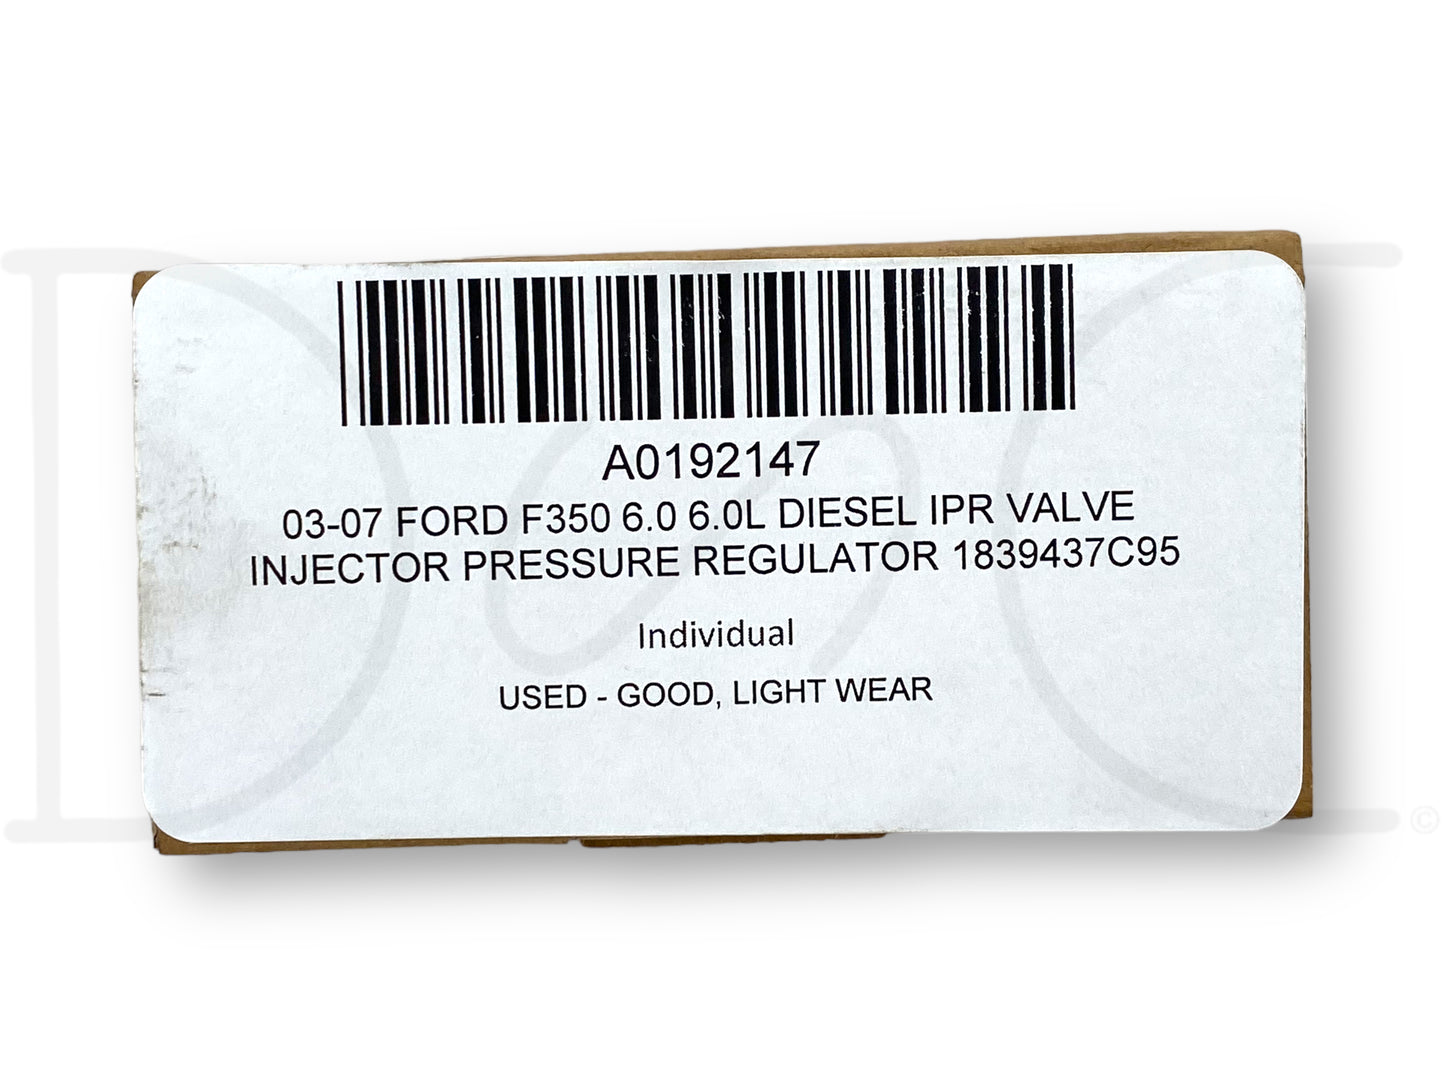 03-07 Ford F350 6.0 6.0L Diesel IPR Valve Injector Pressure Regulator 1839437C95